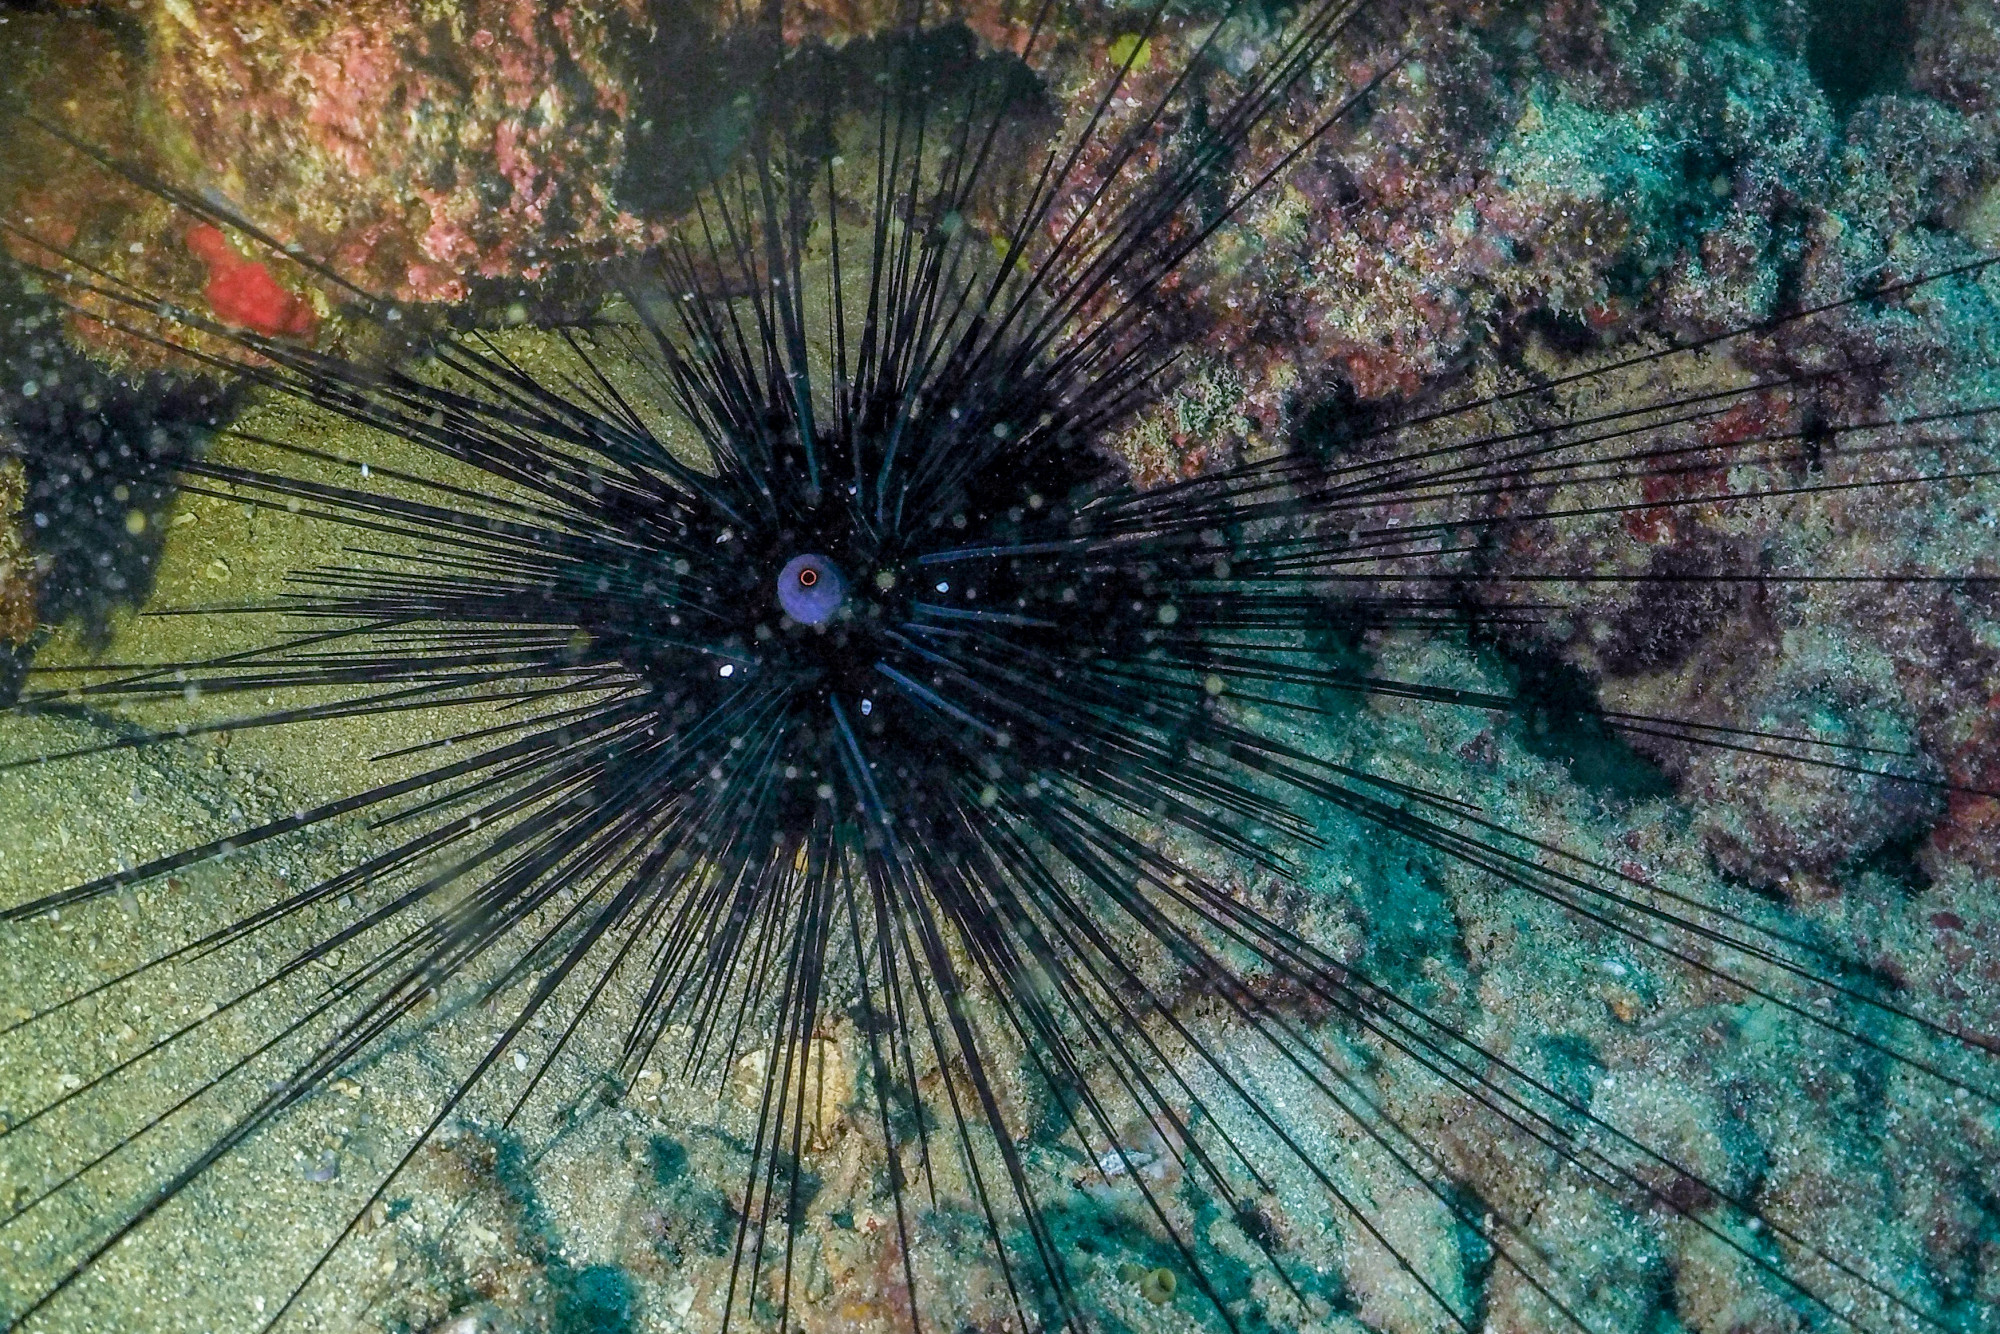 Parazita pusztítja tengeri sünöket a Vörös-tengerben